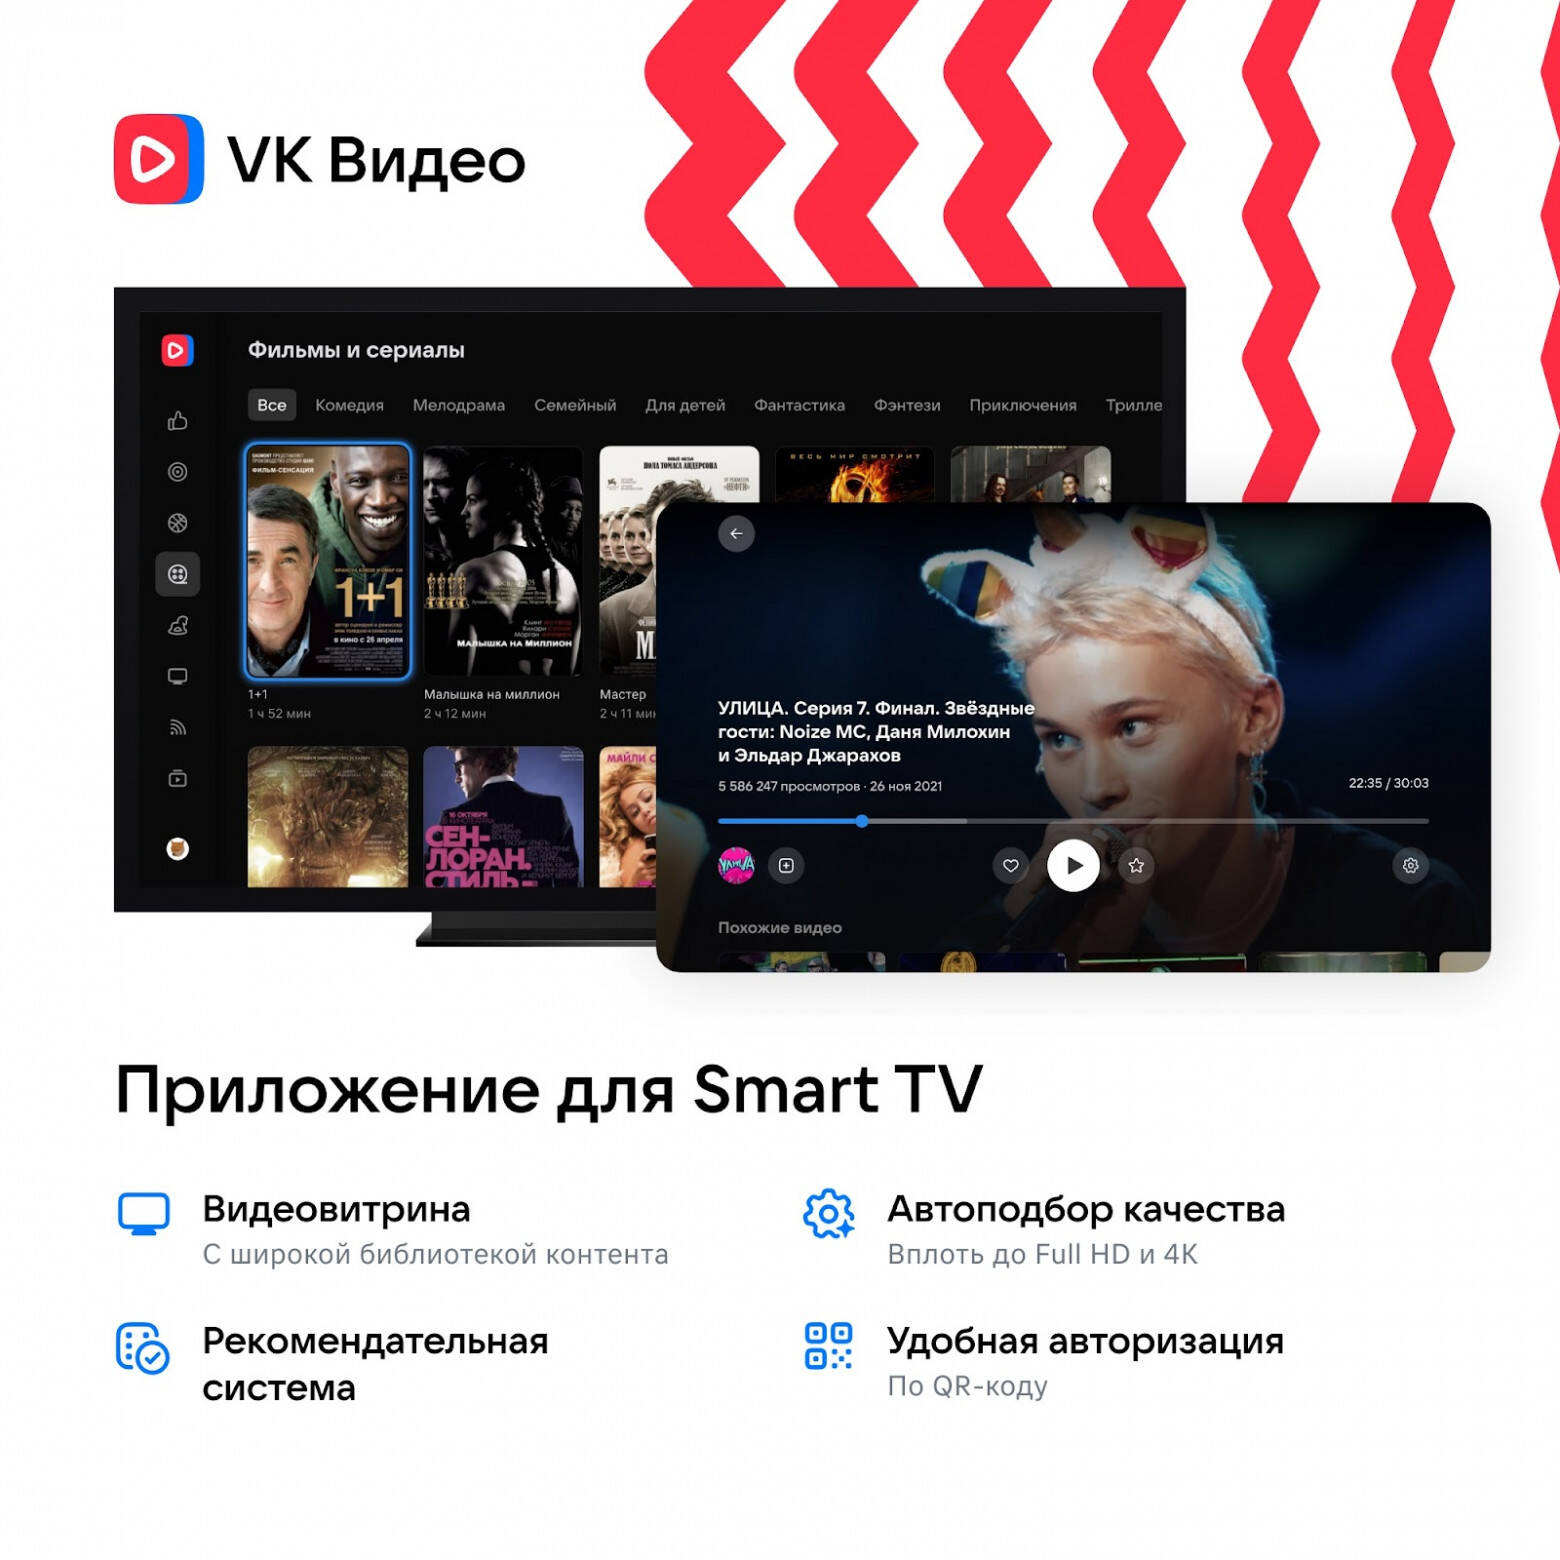 Подробнее о "«ВКонтакте» запускает приложение с фильмами и сериалами для Smart TV"